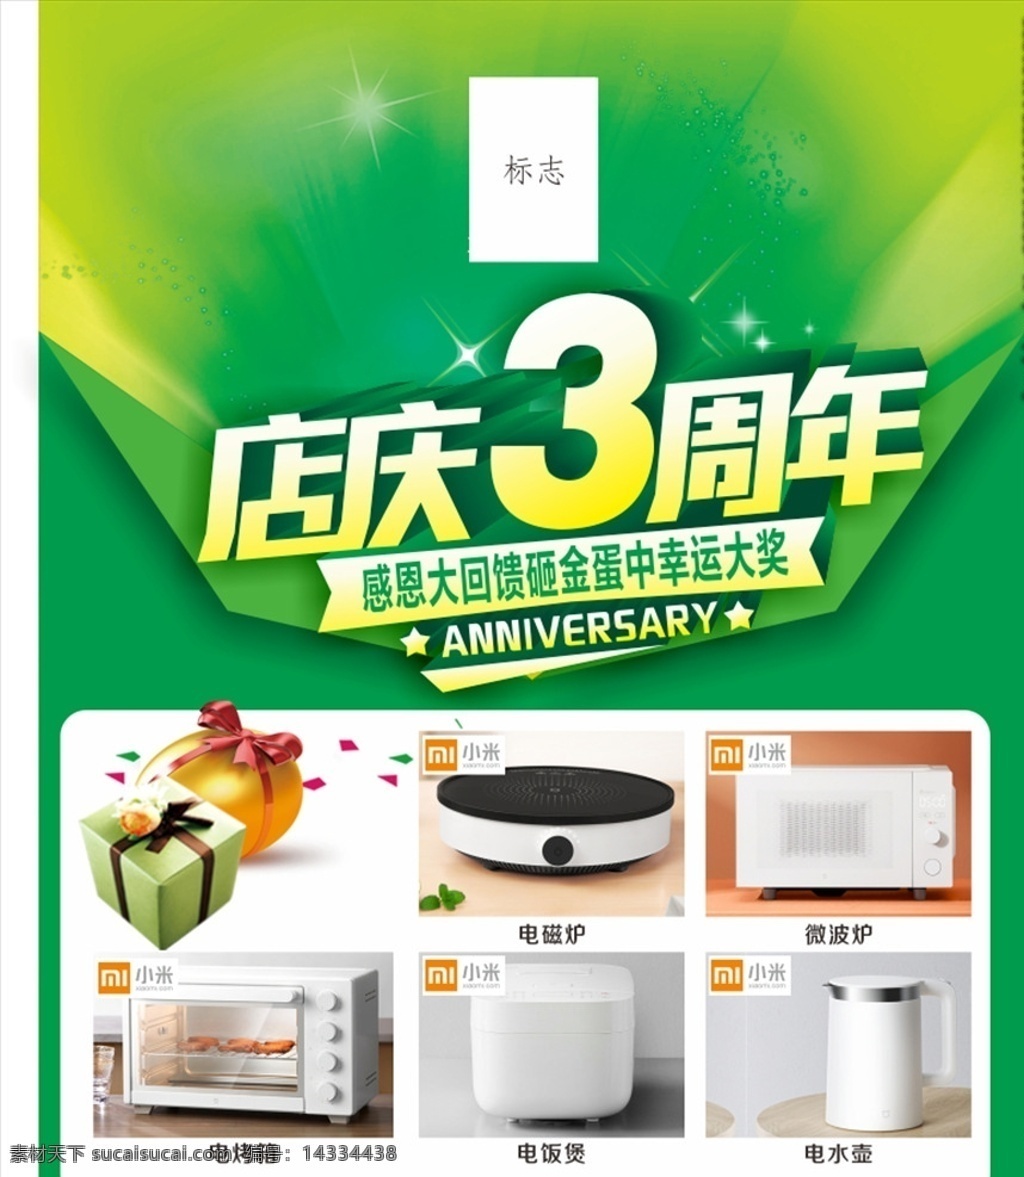 店 庆 周年 周年庆 海报 绿色元素 小米电器 送豪礼 小设计